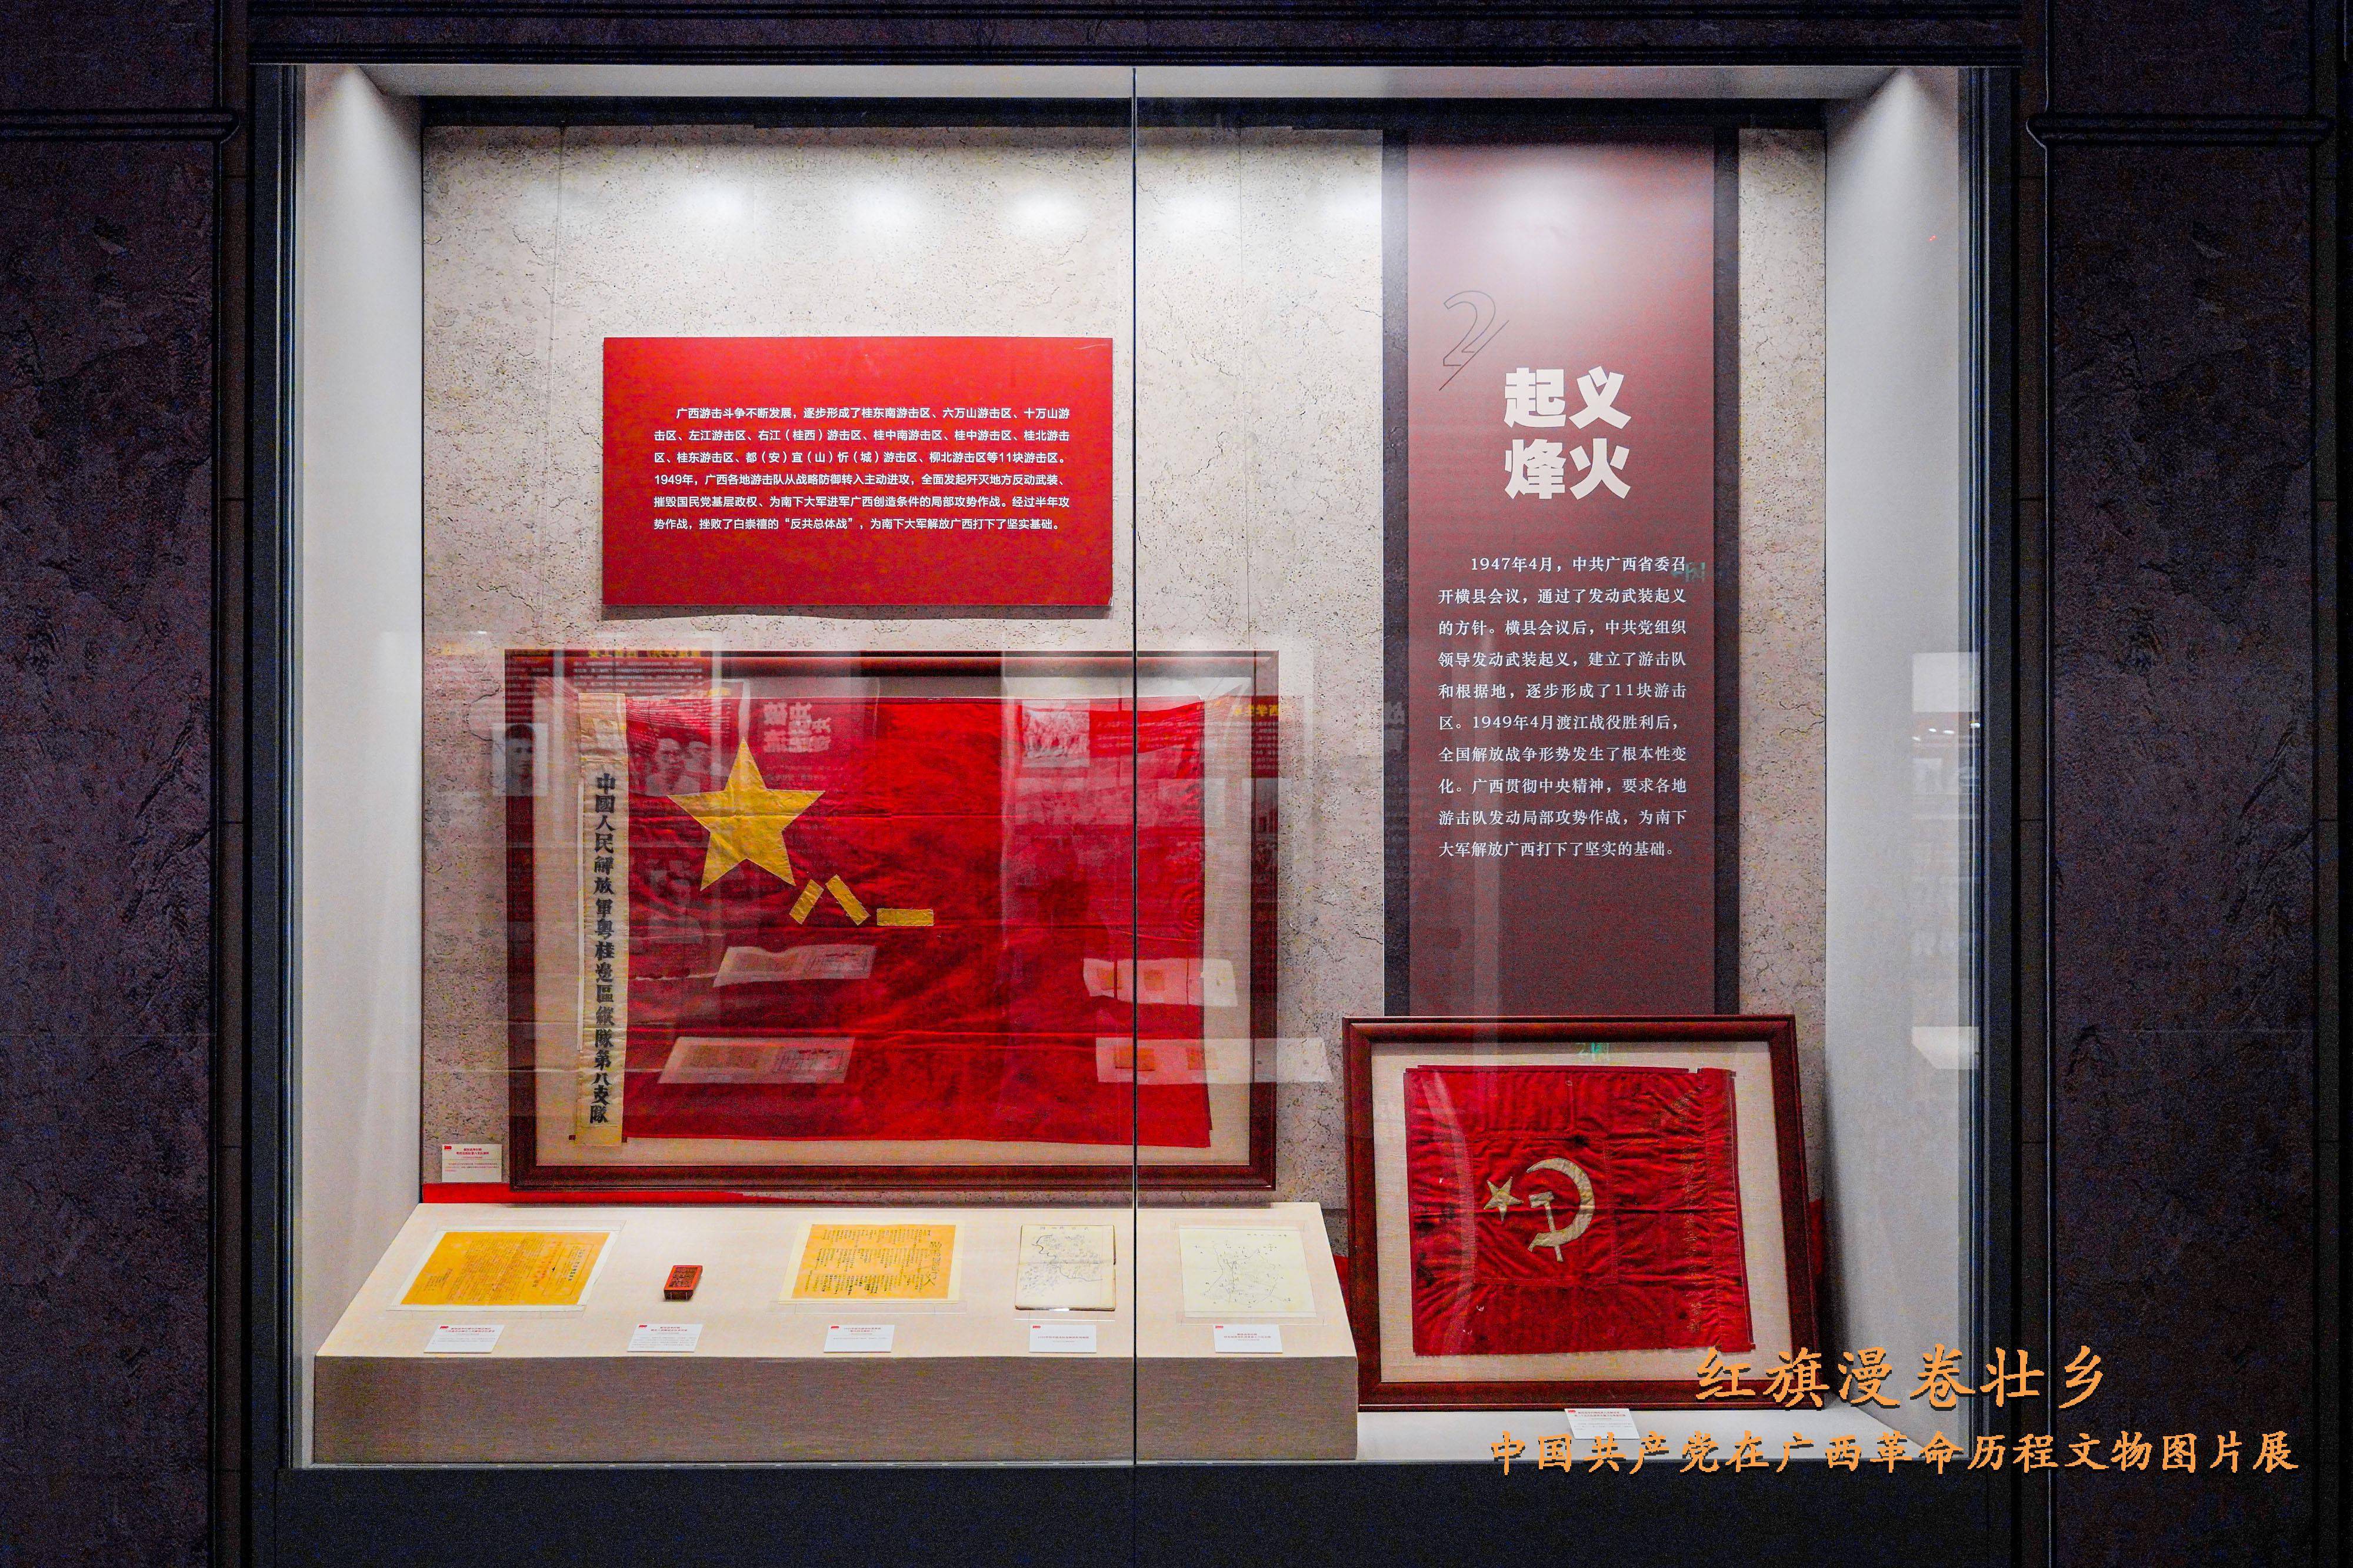 历史,记载中国革命的伟大历程和感人迹,是弘扬革命传统,传承中华文化